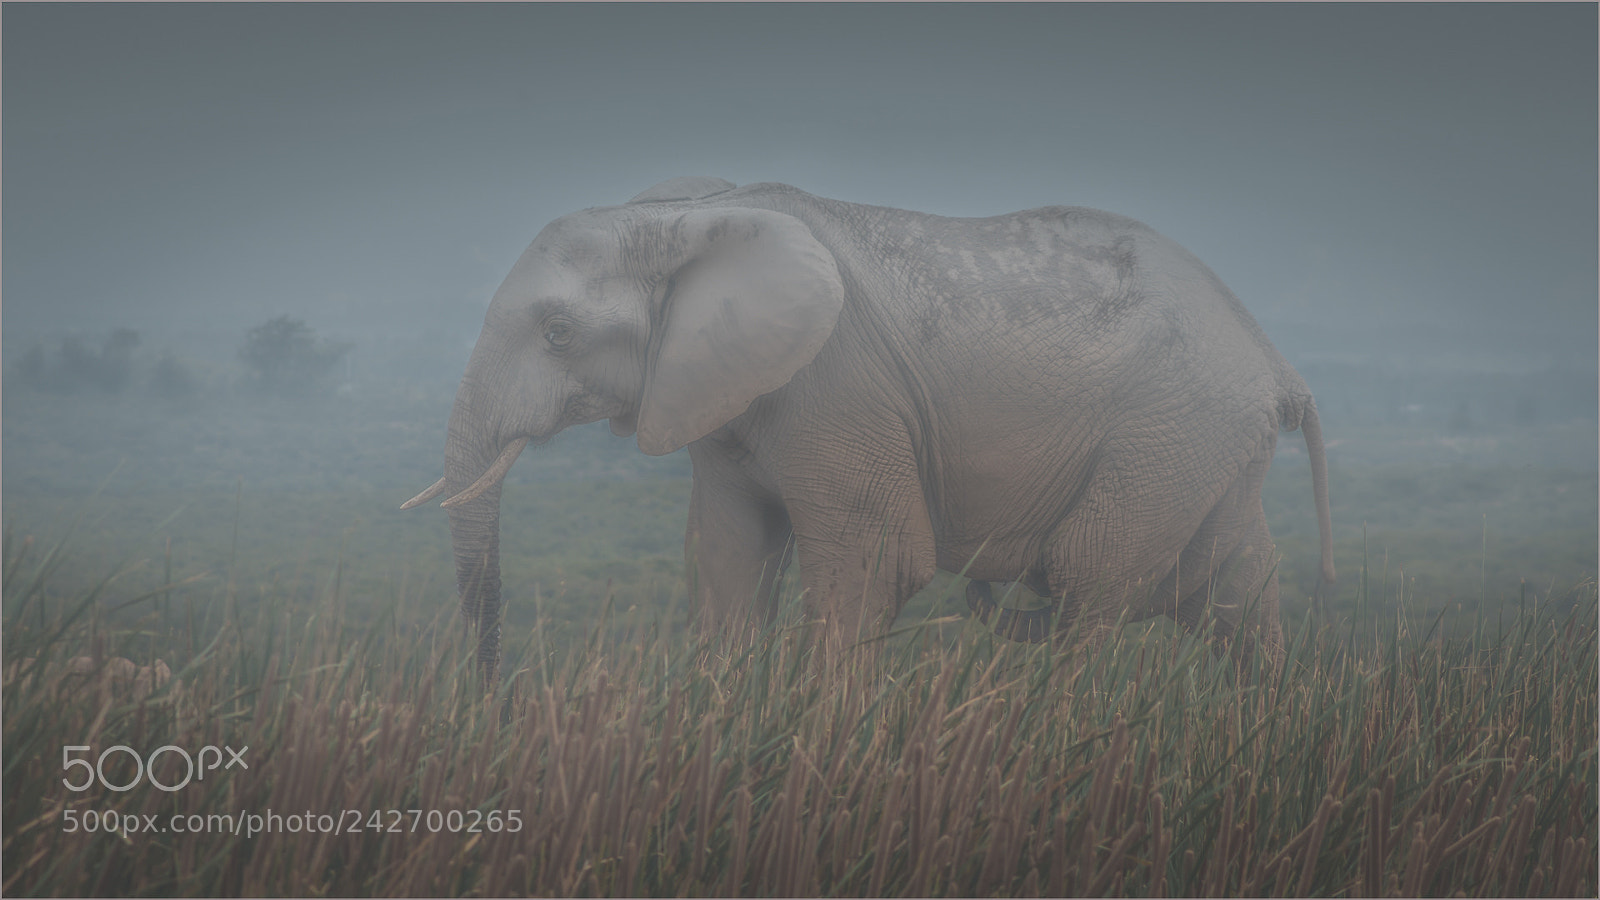 Canon EOS 70D sample photo. Misty elephant photography